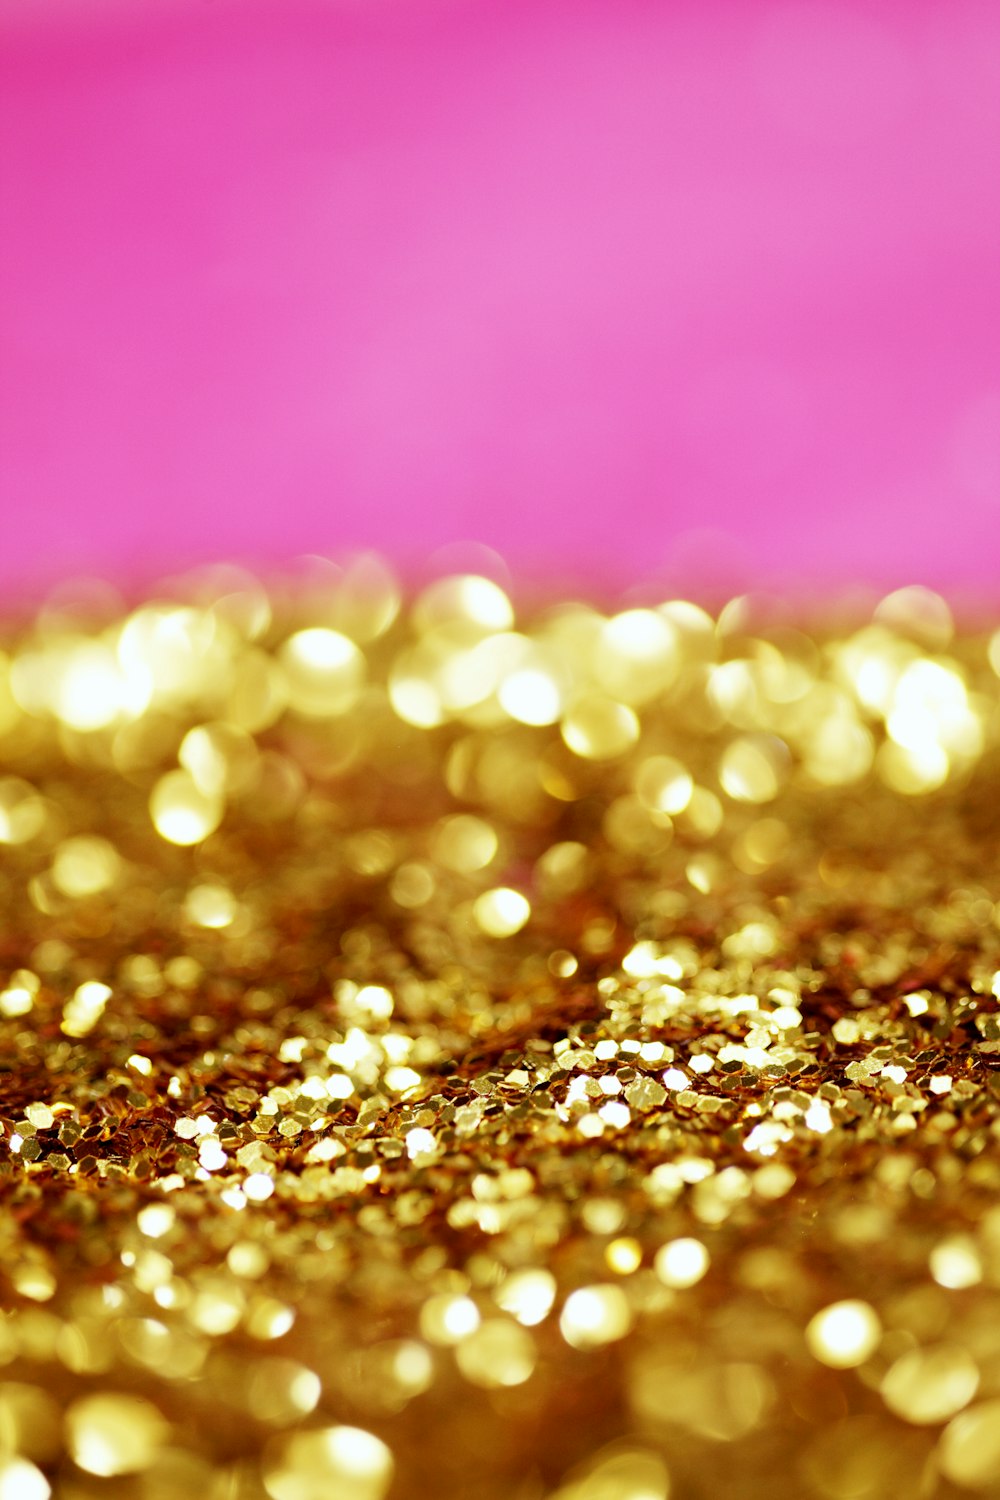 ein rosa-goldener Hintergrund mit viel goldenem Glitzer